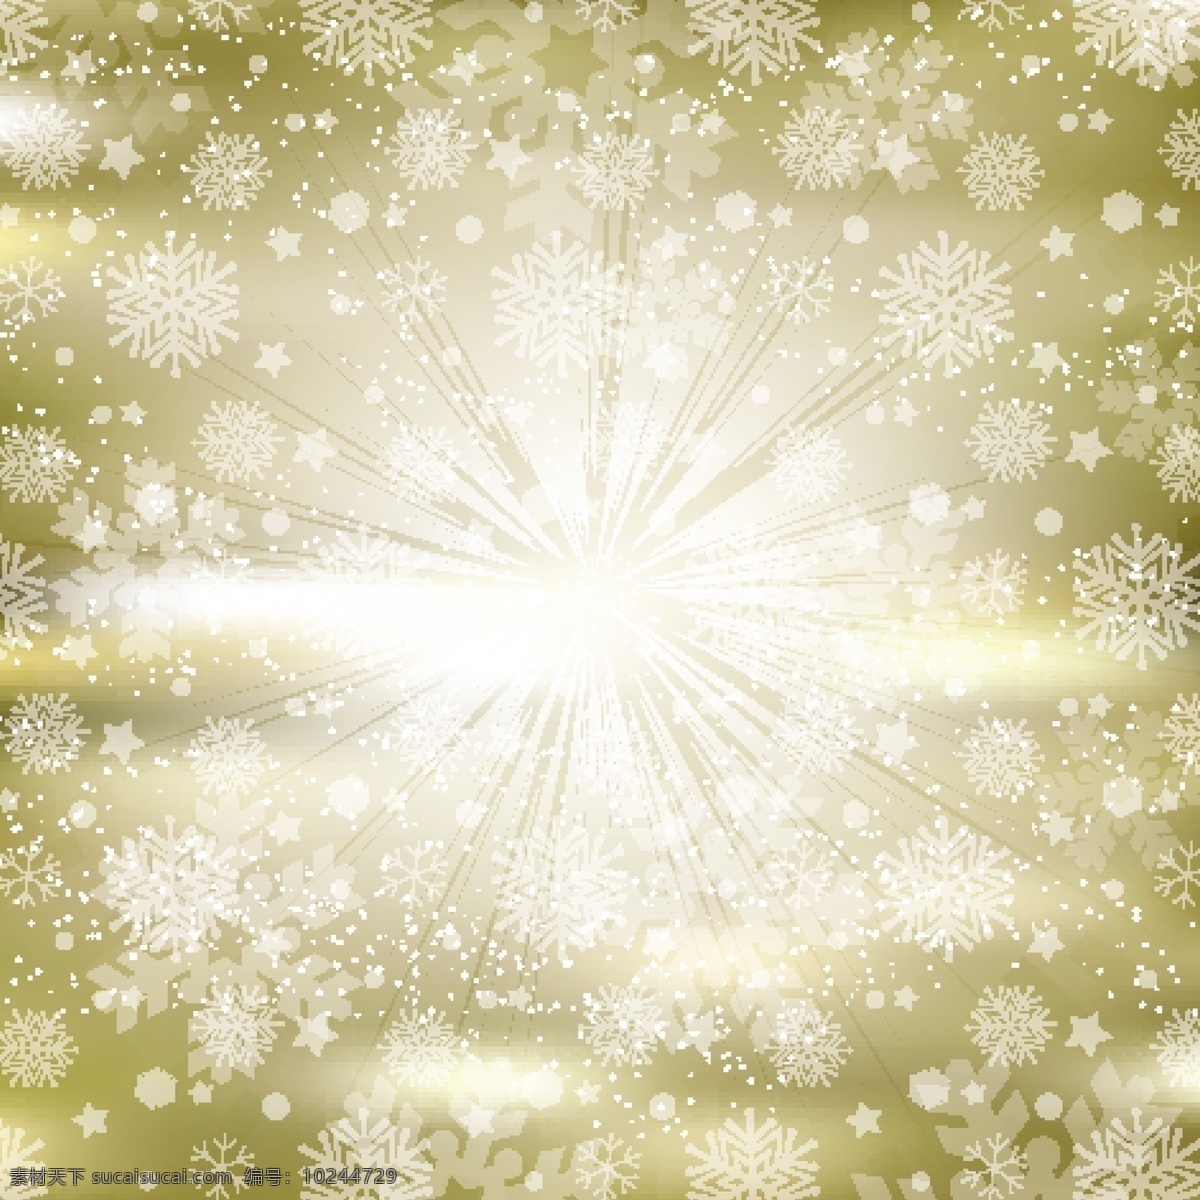 金色 背景 雪花 圣诞节 下雪了 圣诞快乐 冬天 庆祝 冰 假日 闪闪发光 金色的 节日快乐 冬天的背景 金色的背景 季节的问候 雪的背景 黄色